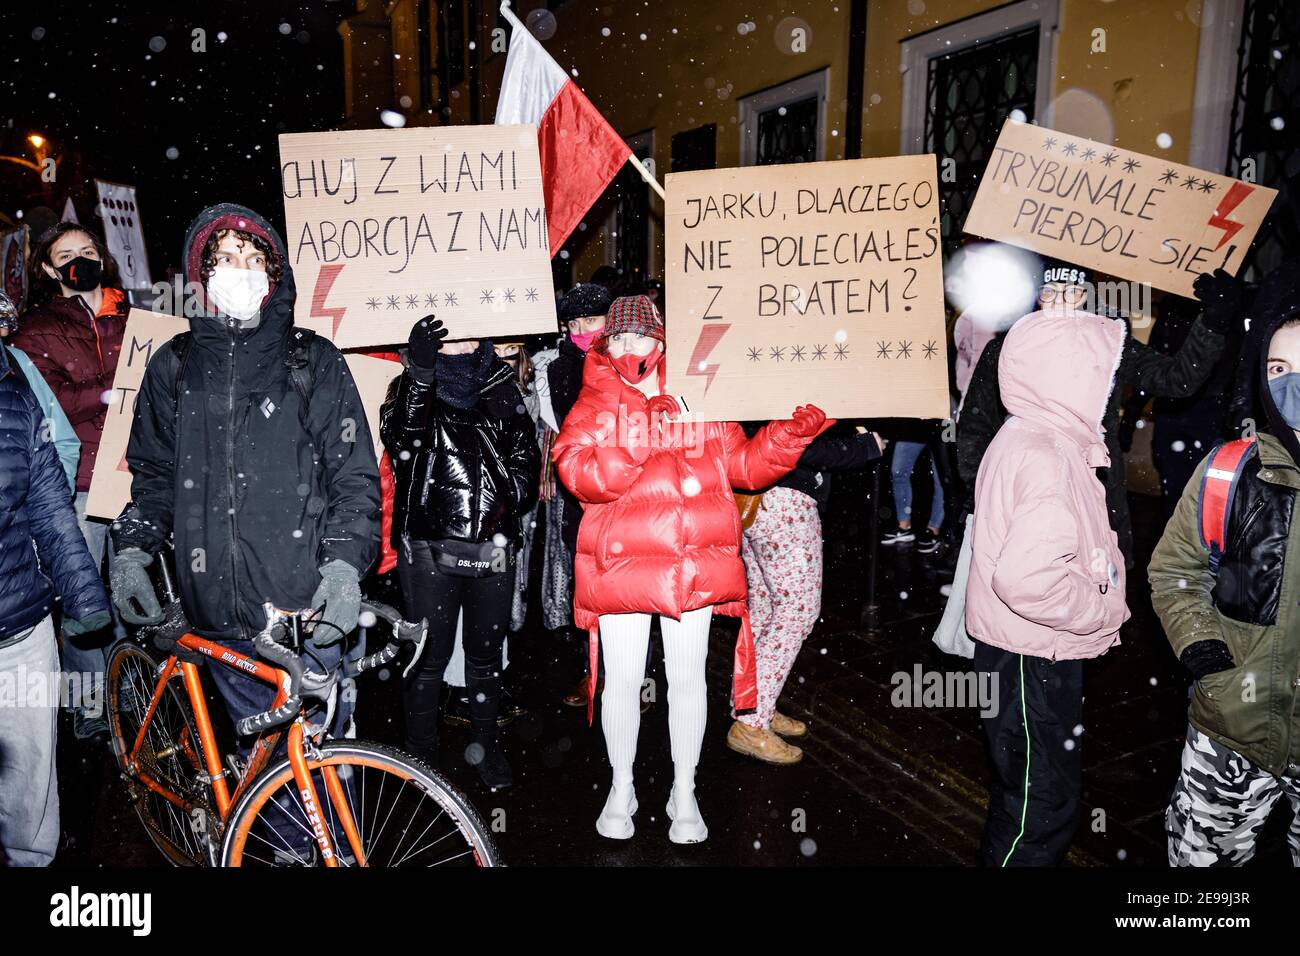 Manifestantes que sostenían pancartas expresando su opinión durante las manifestaciones.después del veredicto del Tribunal Constitucional polaco que entró en vigor el 27 de enero, para implementar una de las leyes antiaborto más restrictivas en Europa, cientos de polacos tomaron las calles en todas las ciudades importantes. Las protestas fueron organizadas por la huelga de mujeres. Foto de stock